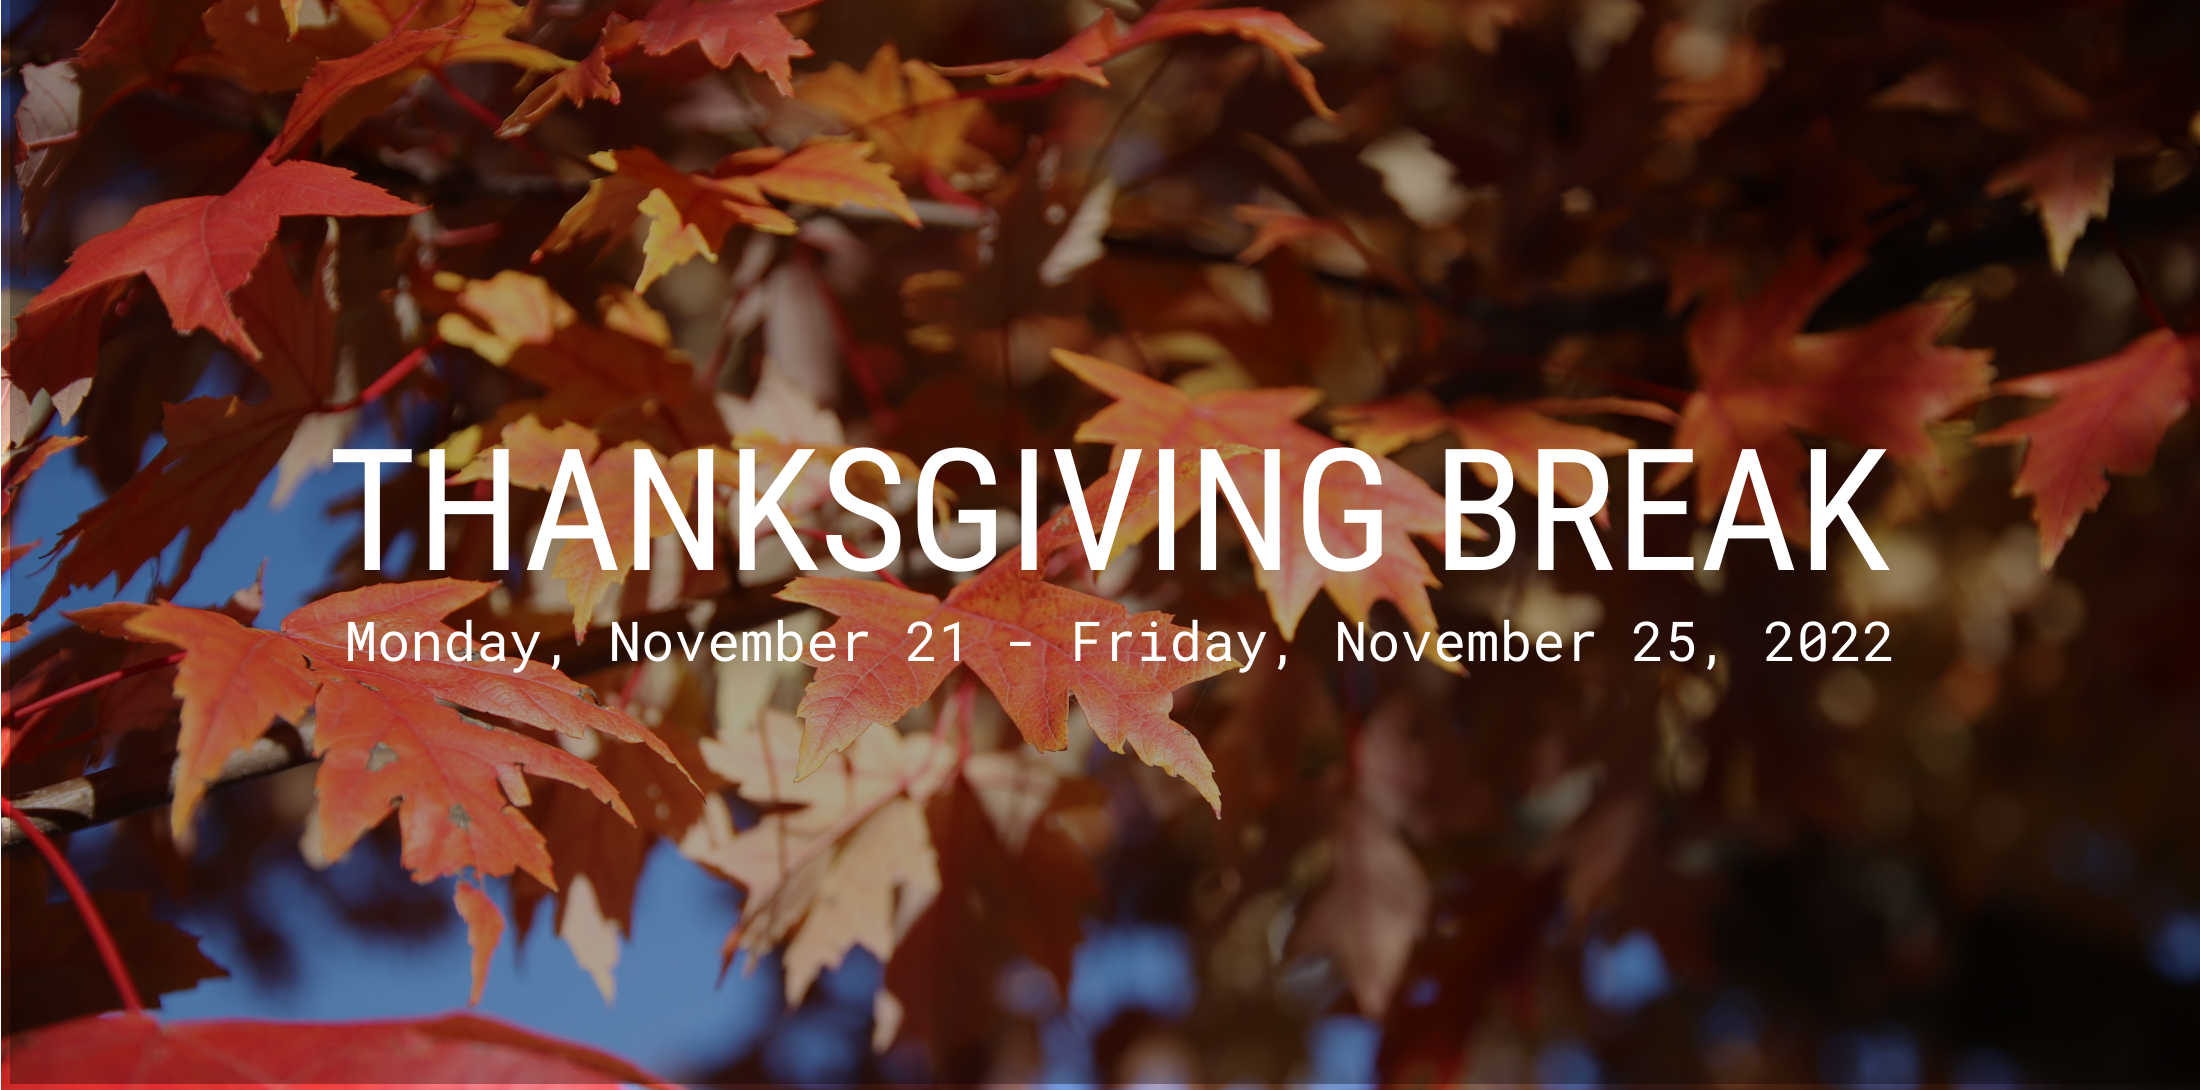 Thanksgiving Break - November 21 - November 25, 2022